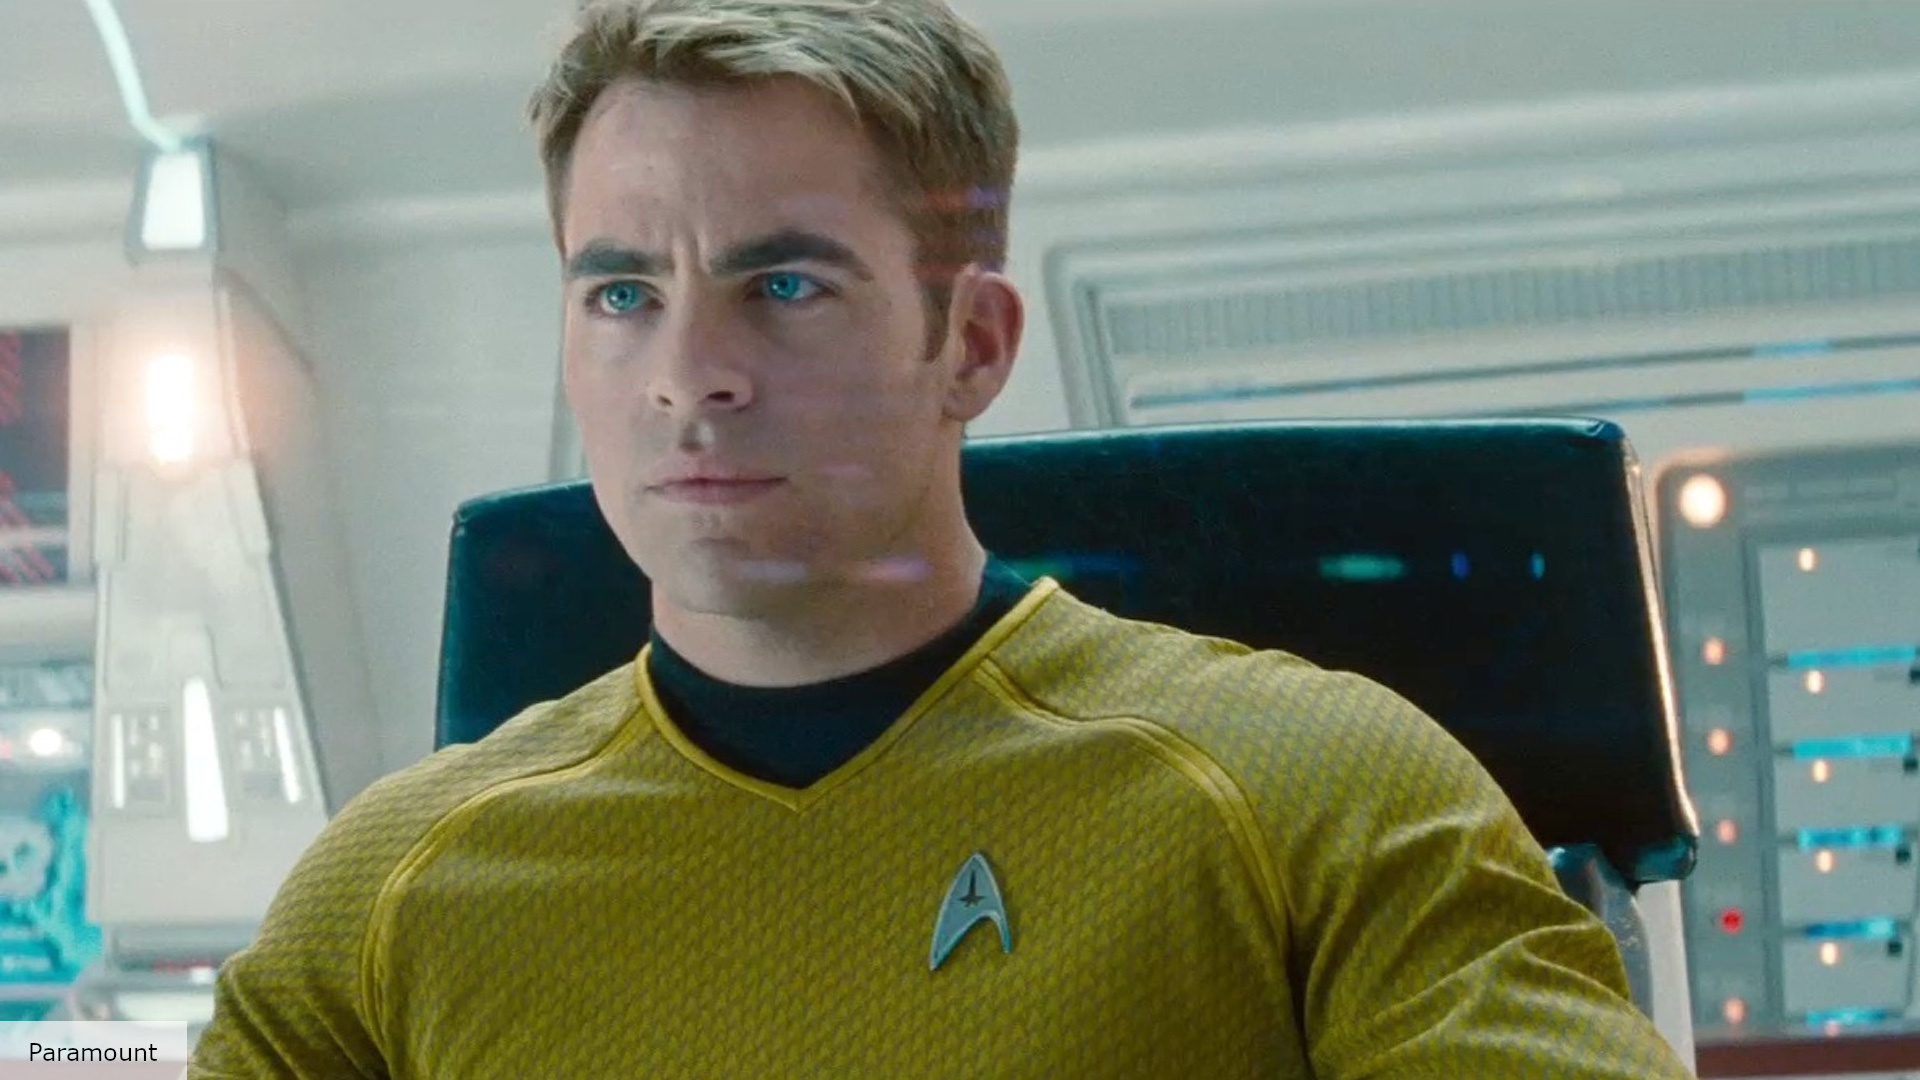 Paramount Developing Second Star Trek Movie In Addition To Star Trek 4